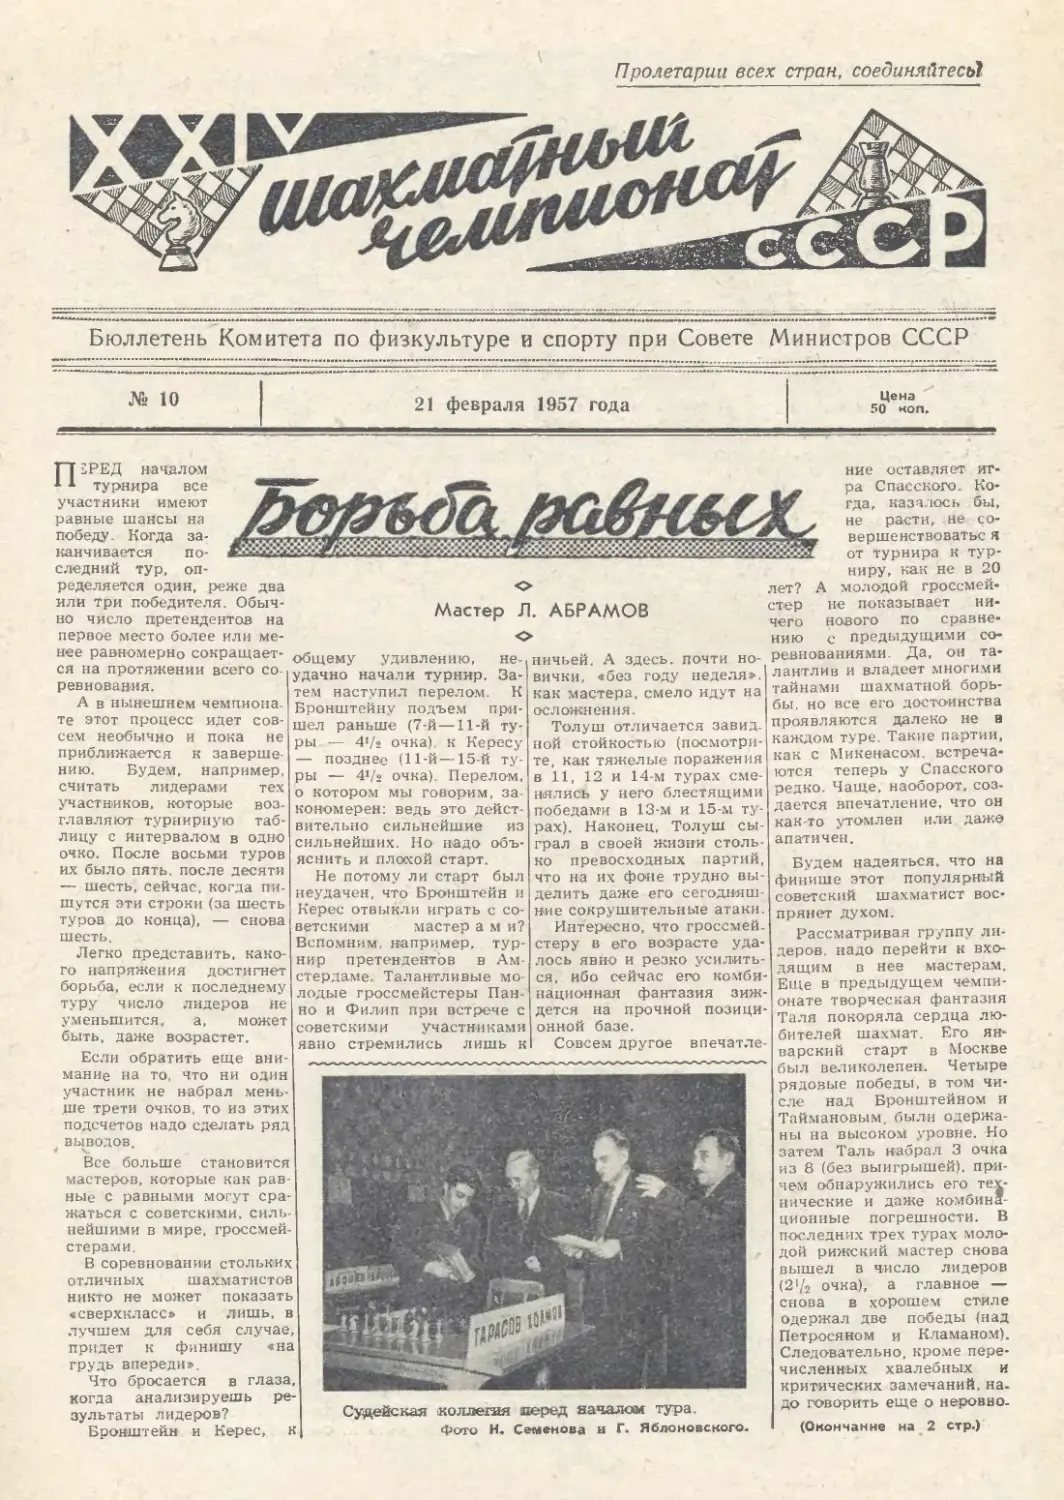 № 10 - 21 февраля 1957 г.
Л.Абрамов - Борьба равных